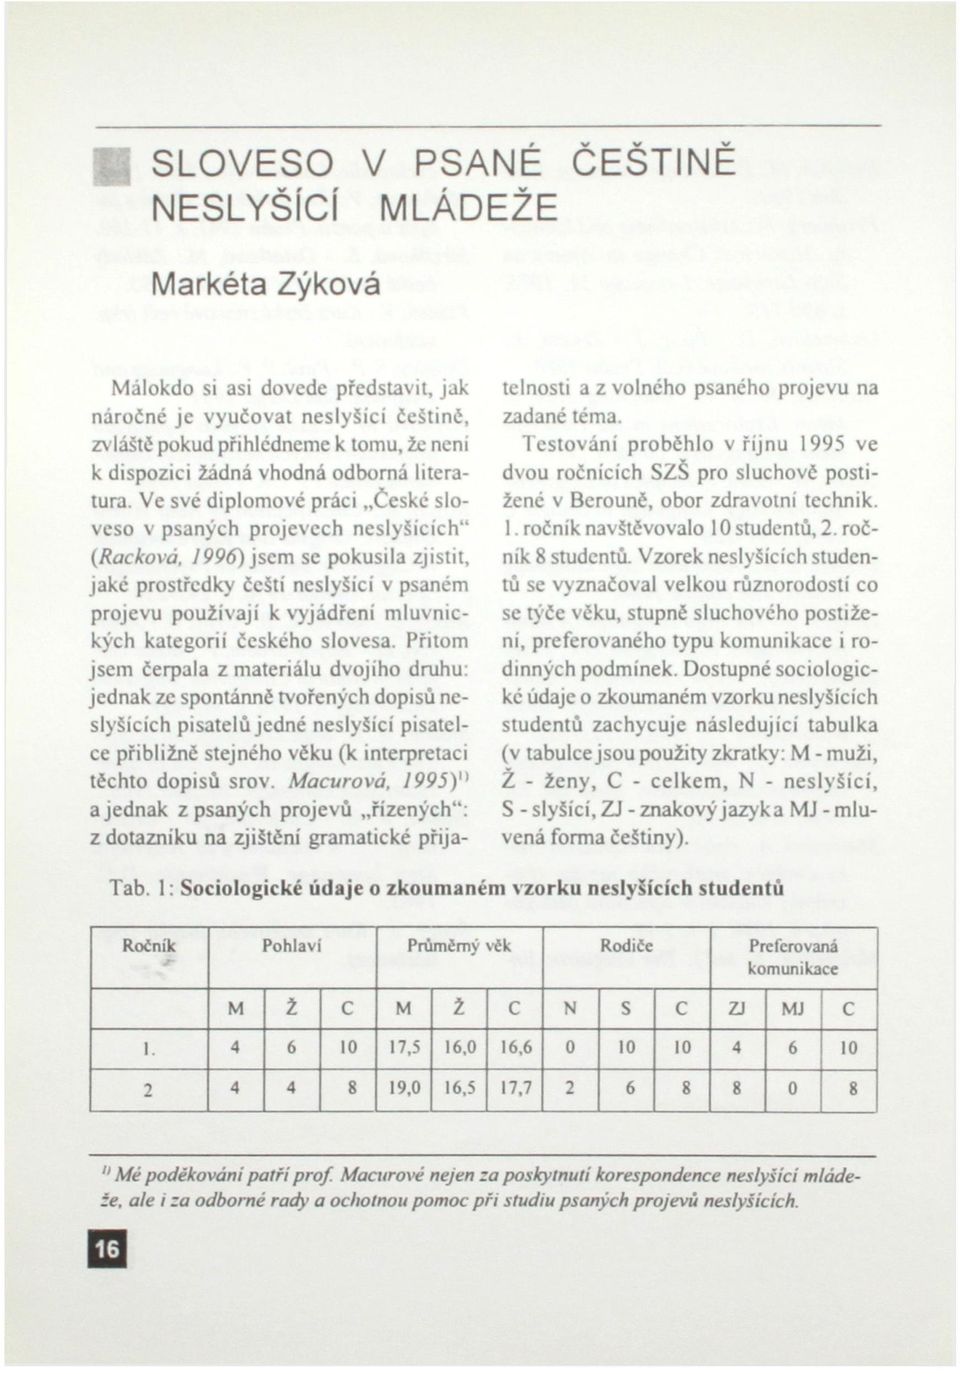 Ve své diplomové práci České sloveso v psaných projevech neslyšících" (Rackova, 1996) jsem se pokusila zjistit, jaké prostředky čeští neslyšící v psaném projevu používají k vyjádření mluvnických